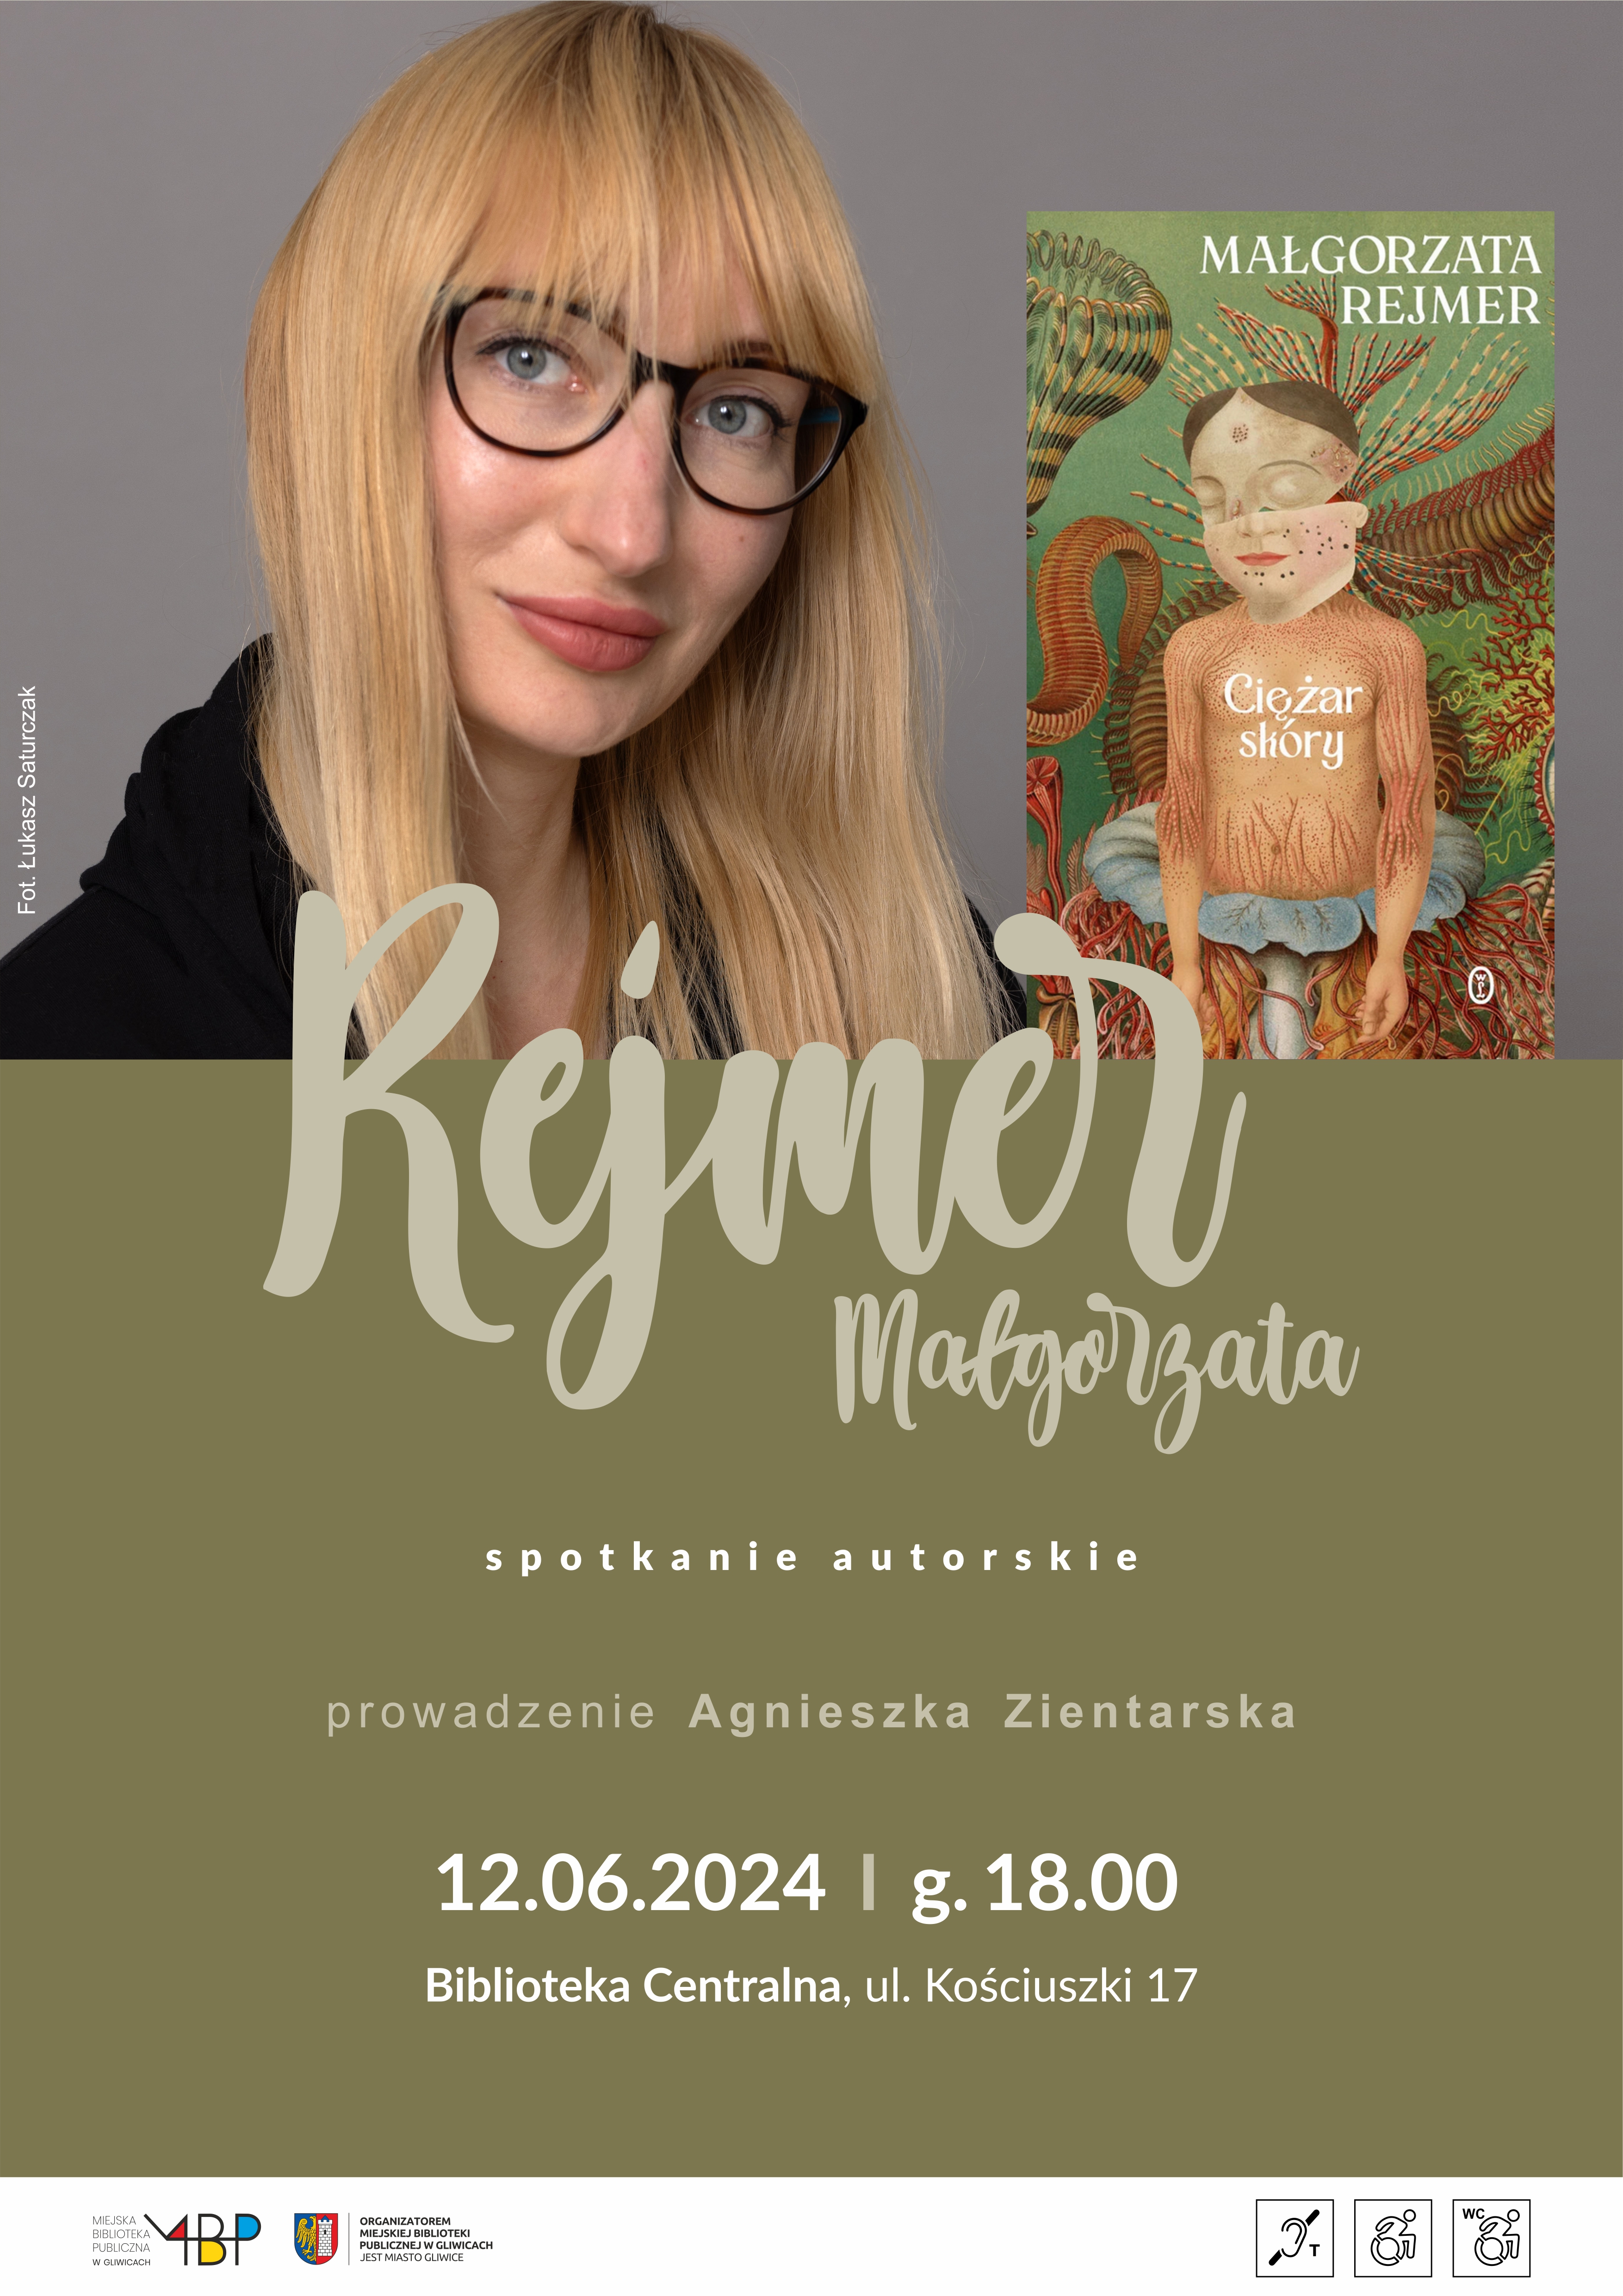 Spotkanie autorskie z Małgorzatą Rejmer